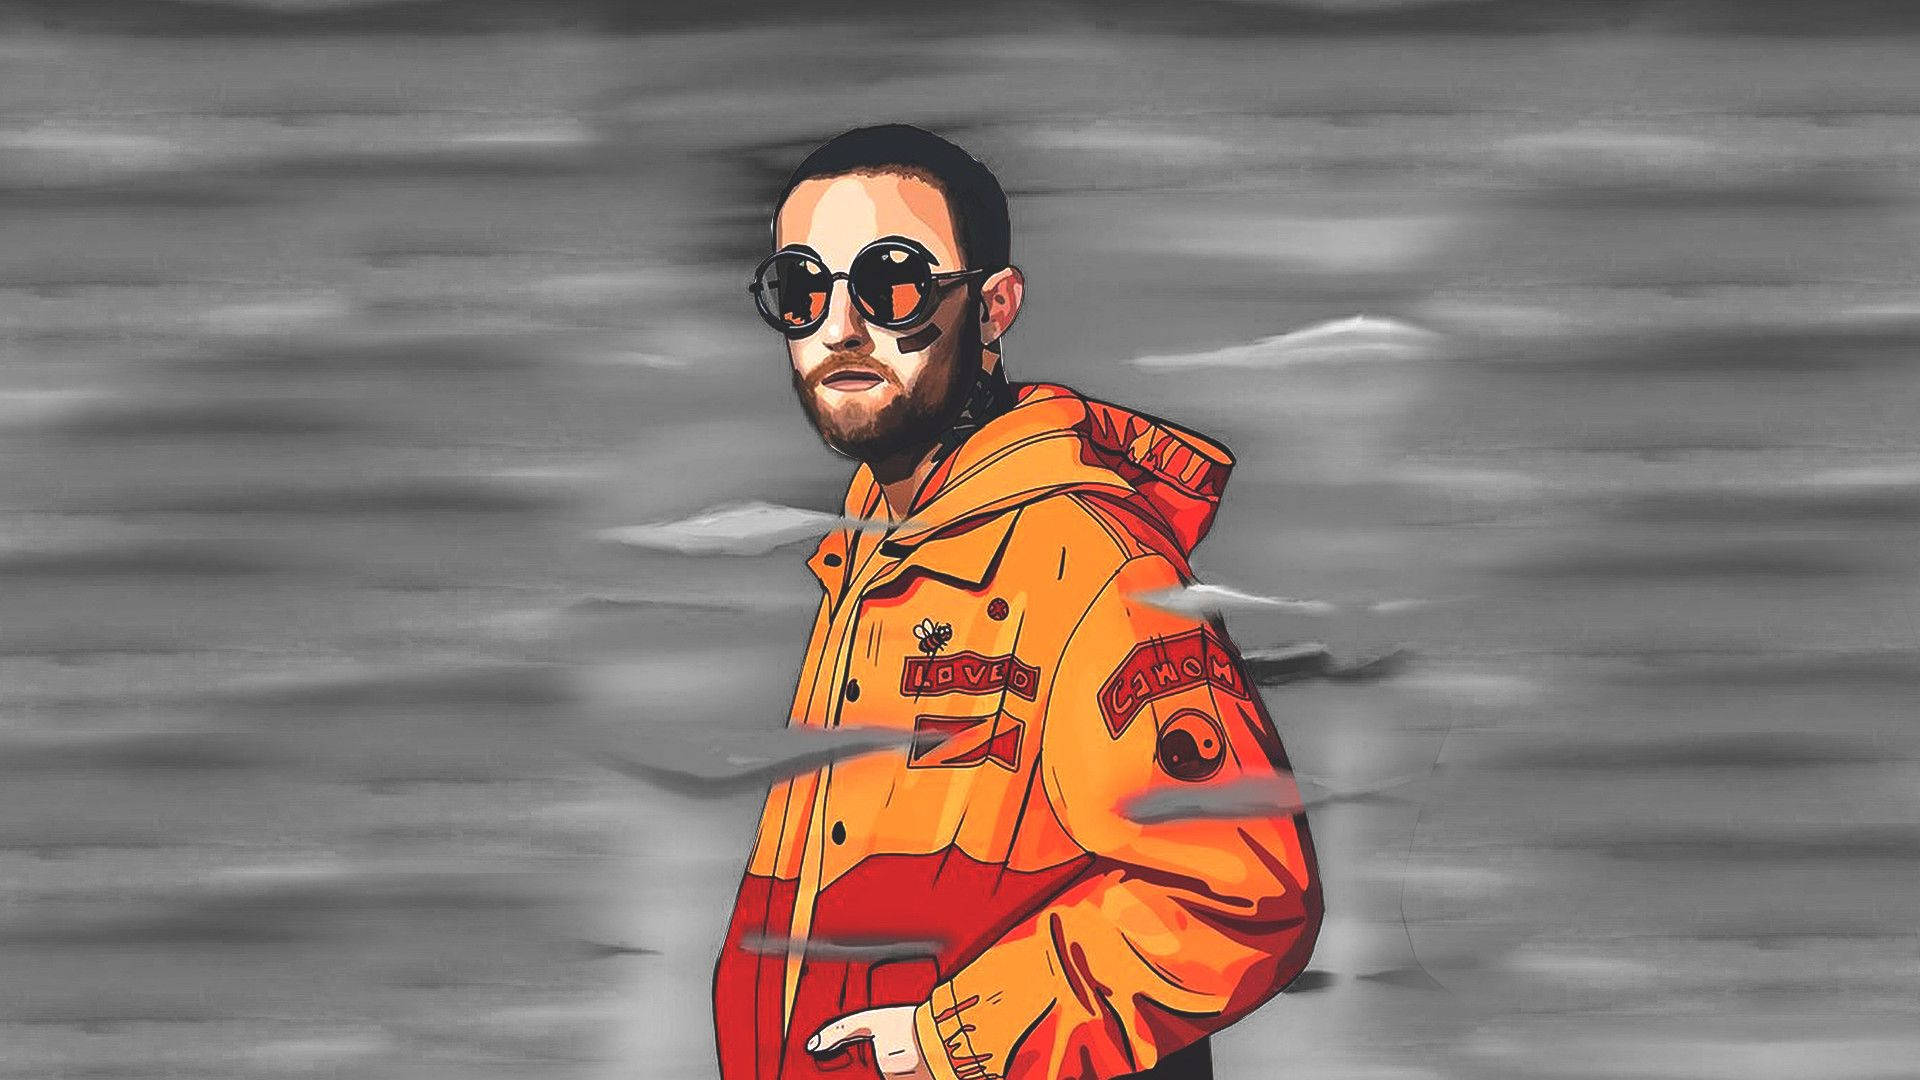 Digital Drawing Of Mac Miller In Orange Jacket